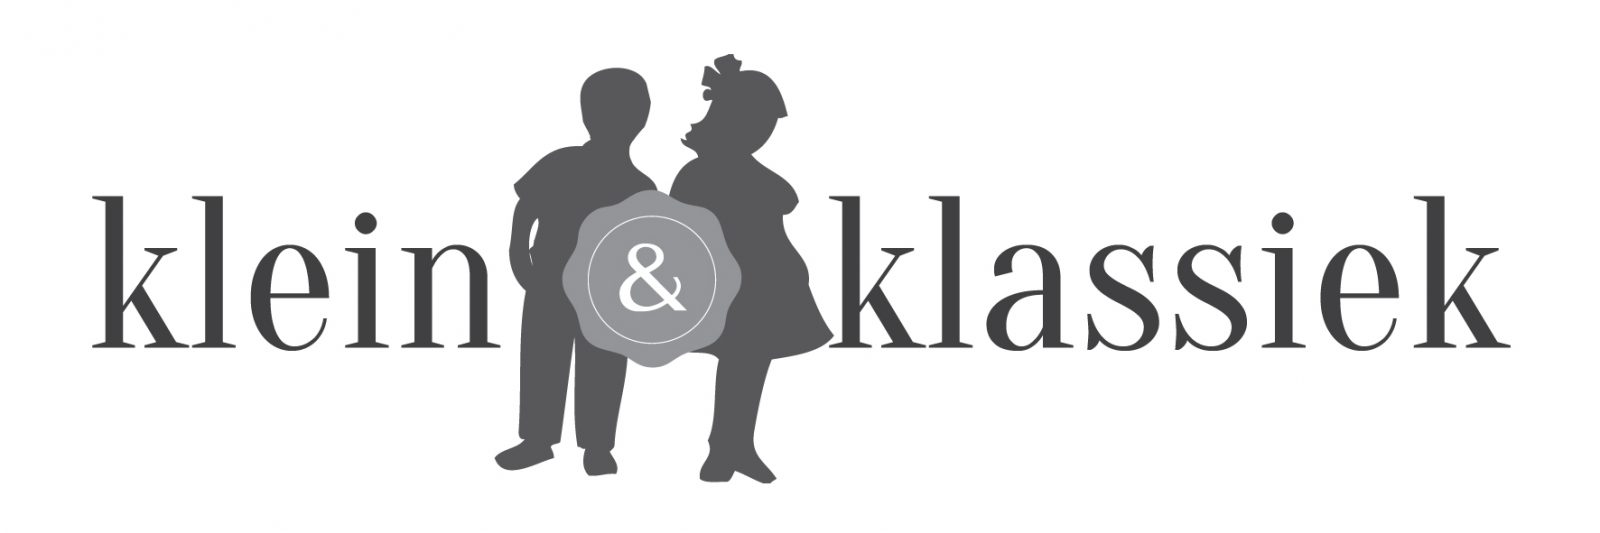 Klein & Klassiek